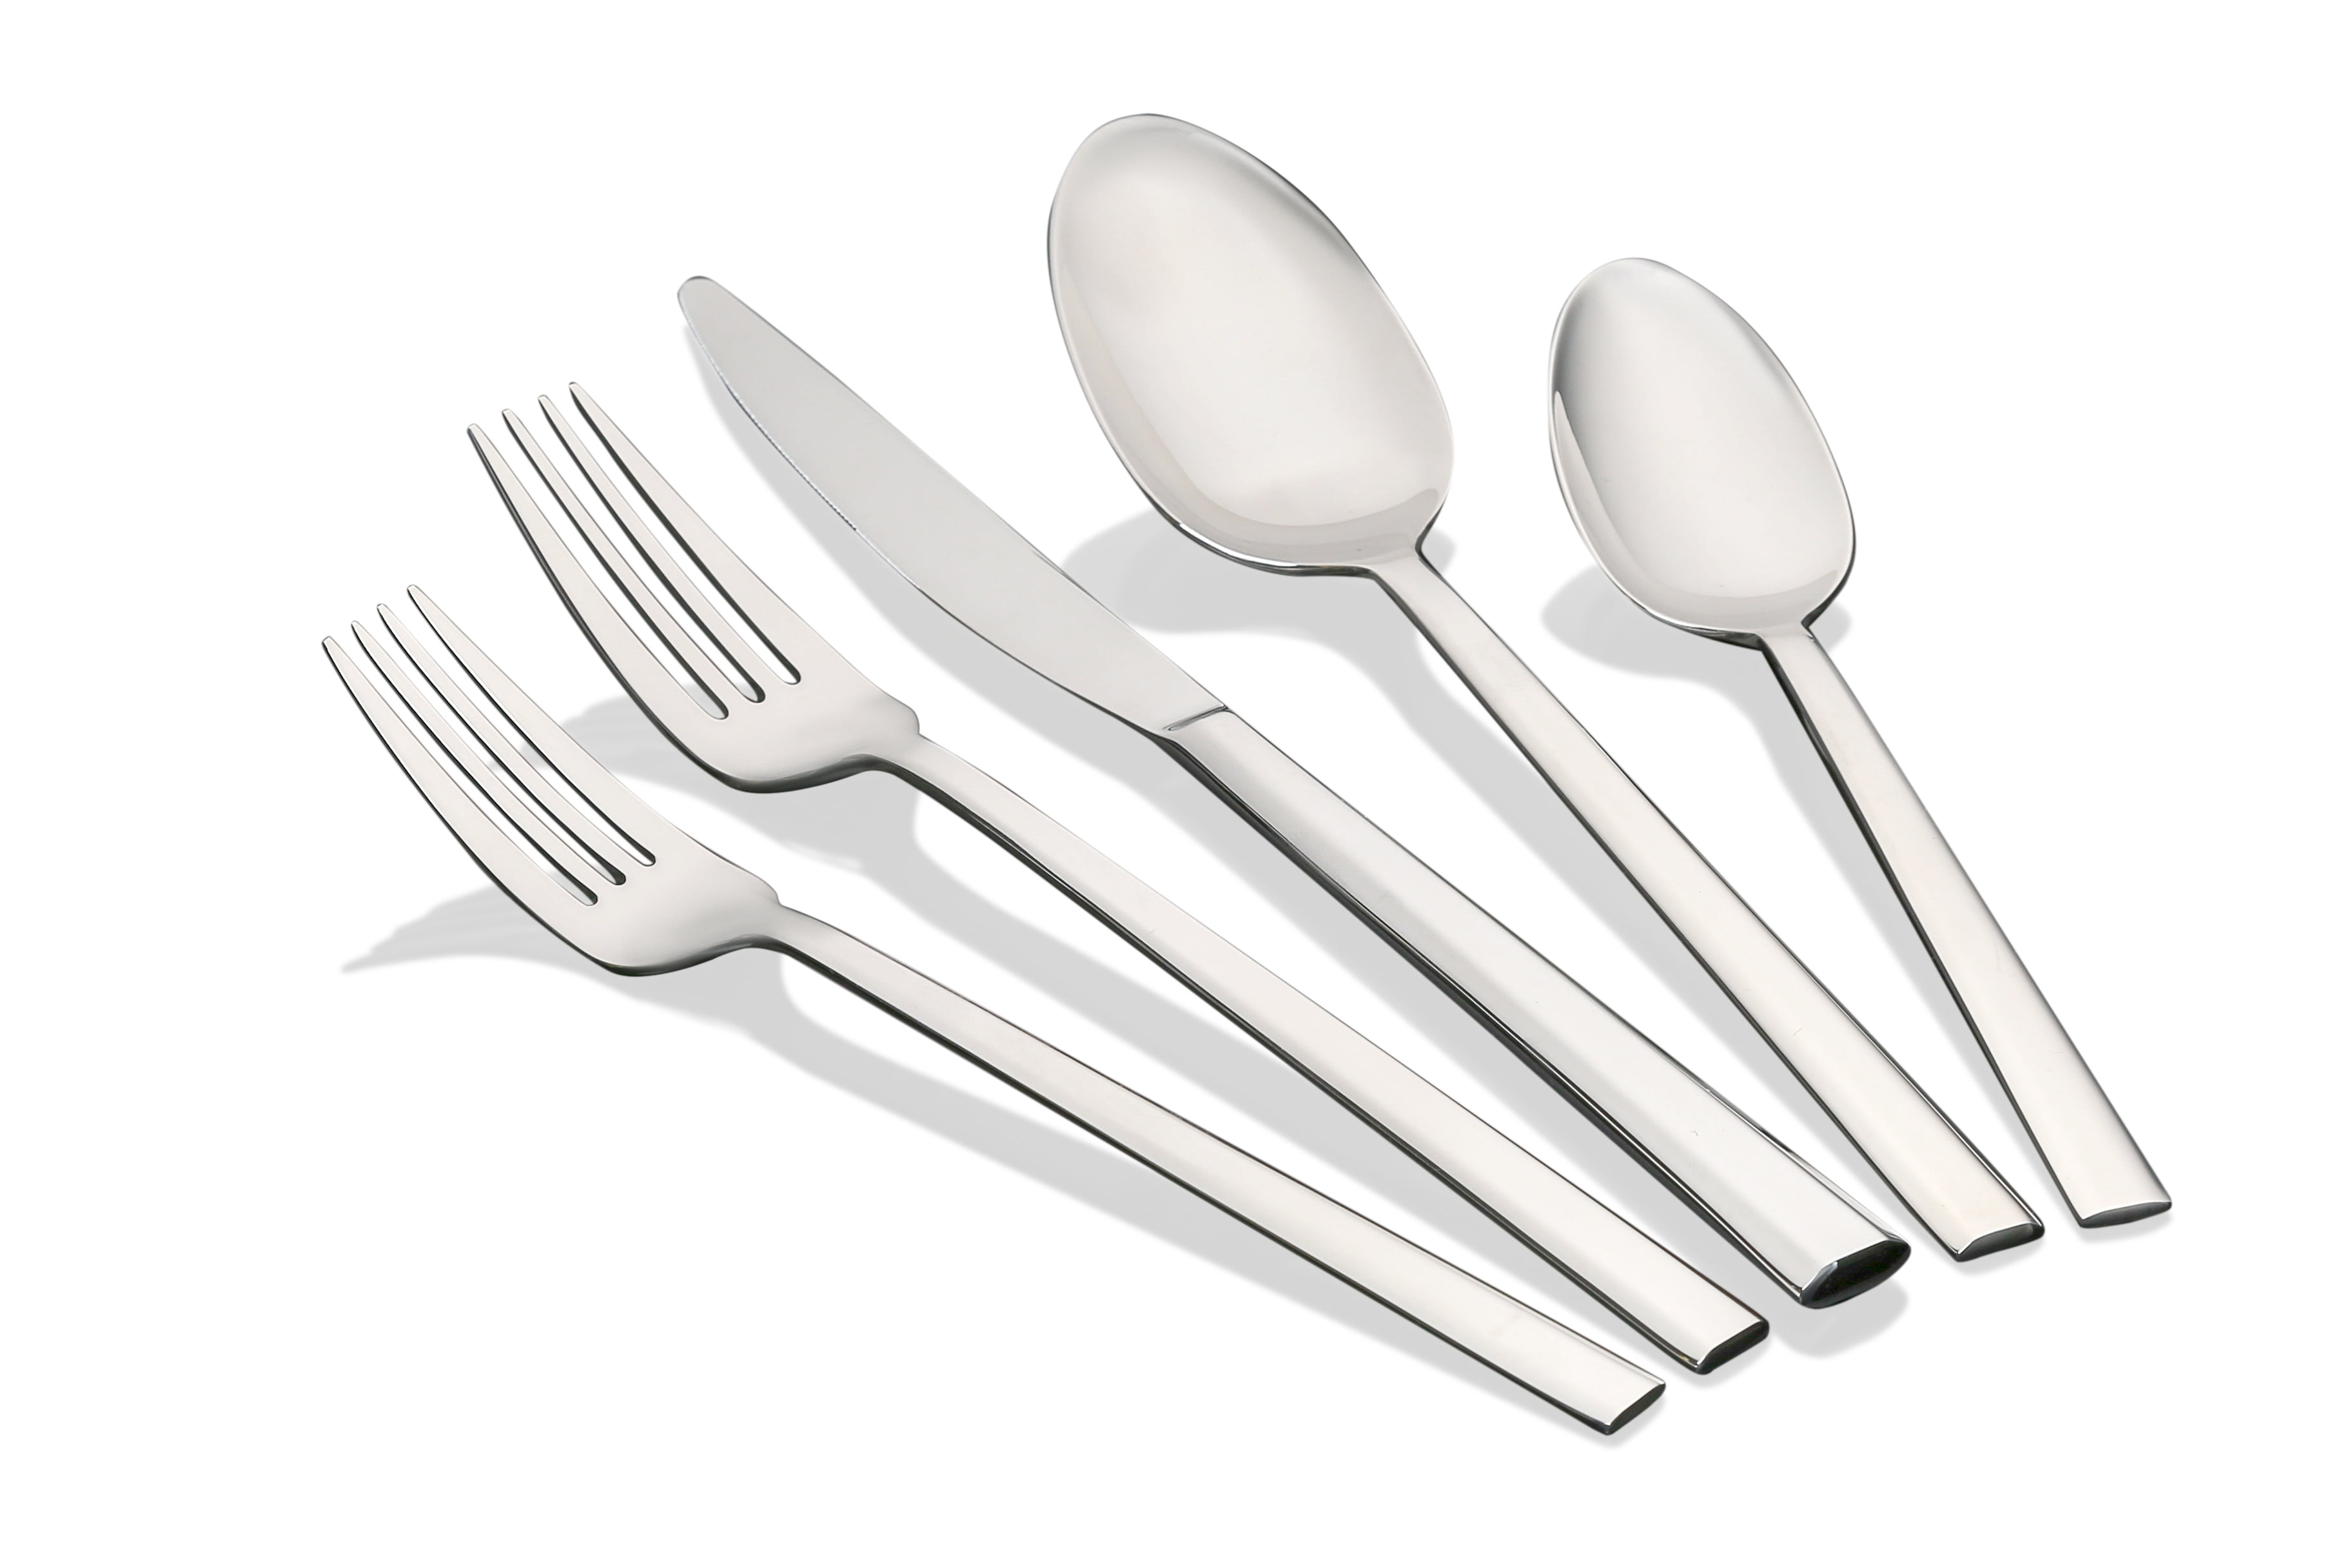 Flatware Silverware Cutlery Set Stainless Steel 20 Piece Kitchen Mirror Polished 